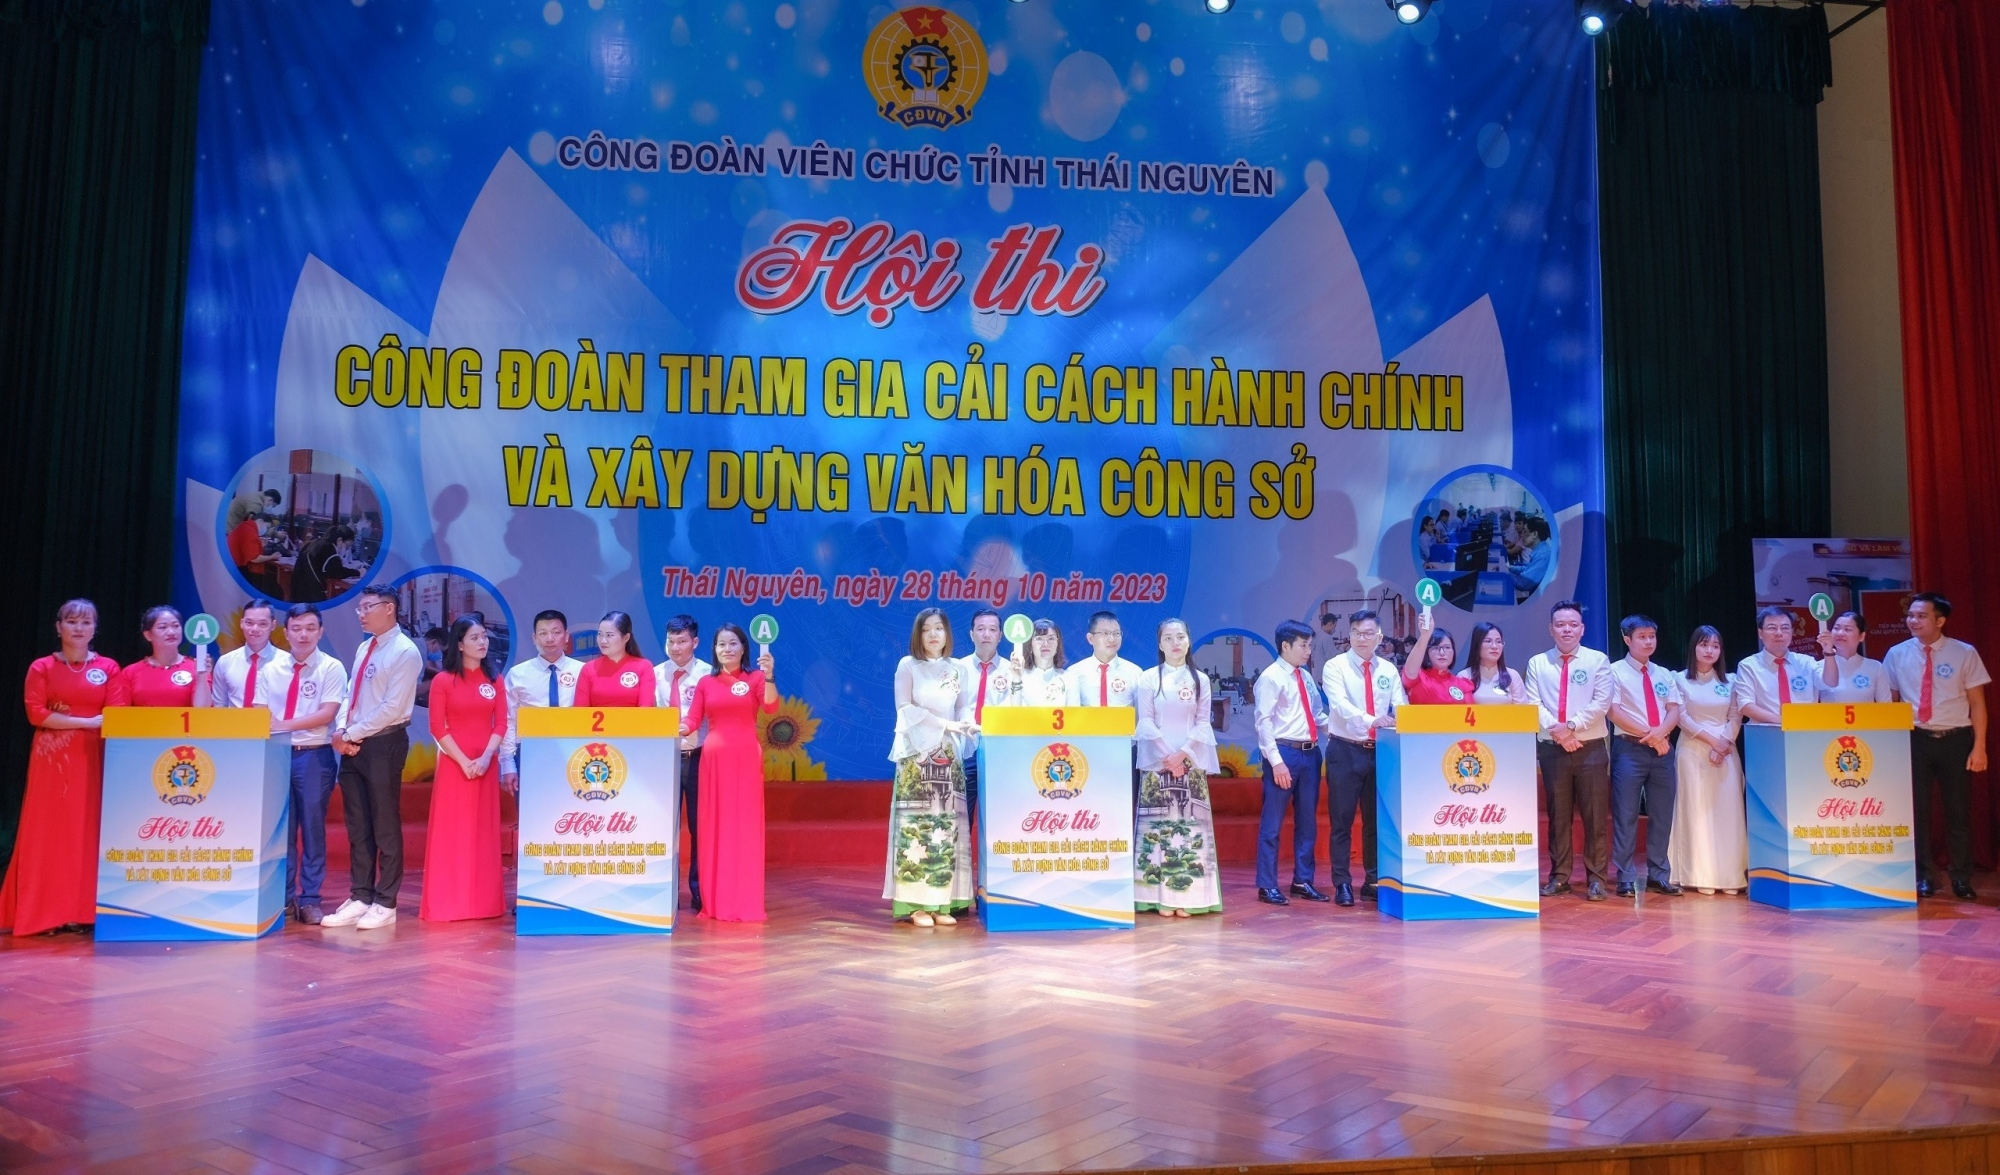 Công đoàn Viên chức tỉnh Thái Nguyên tổ chức Hội thi Công đoàn tham gia cải cách hành chính và văn hoá công sở năm 2023